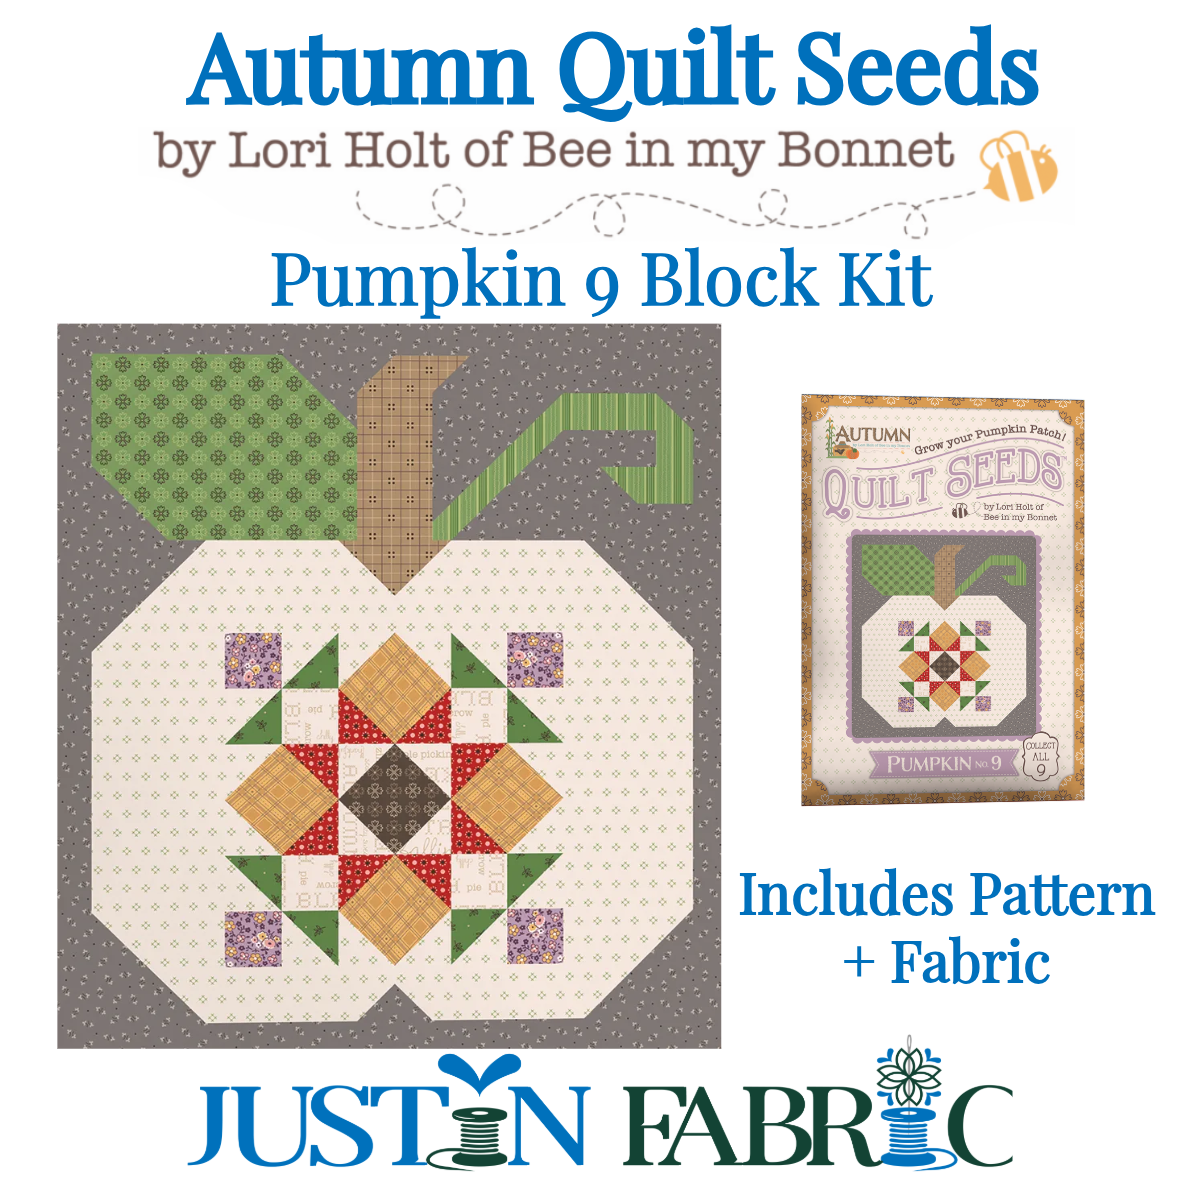 Autumn Quilt Seeds Pumpkin 9 Block Kit Featuring Autumn by Lori Holt